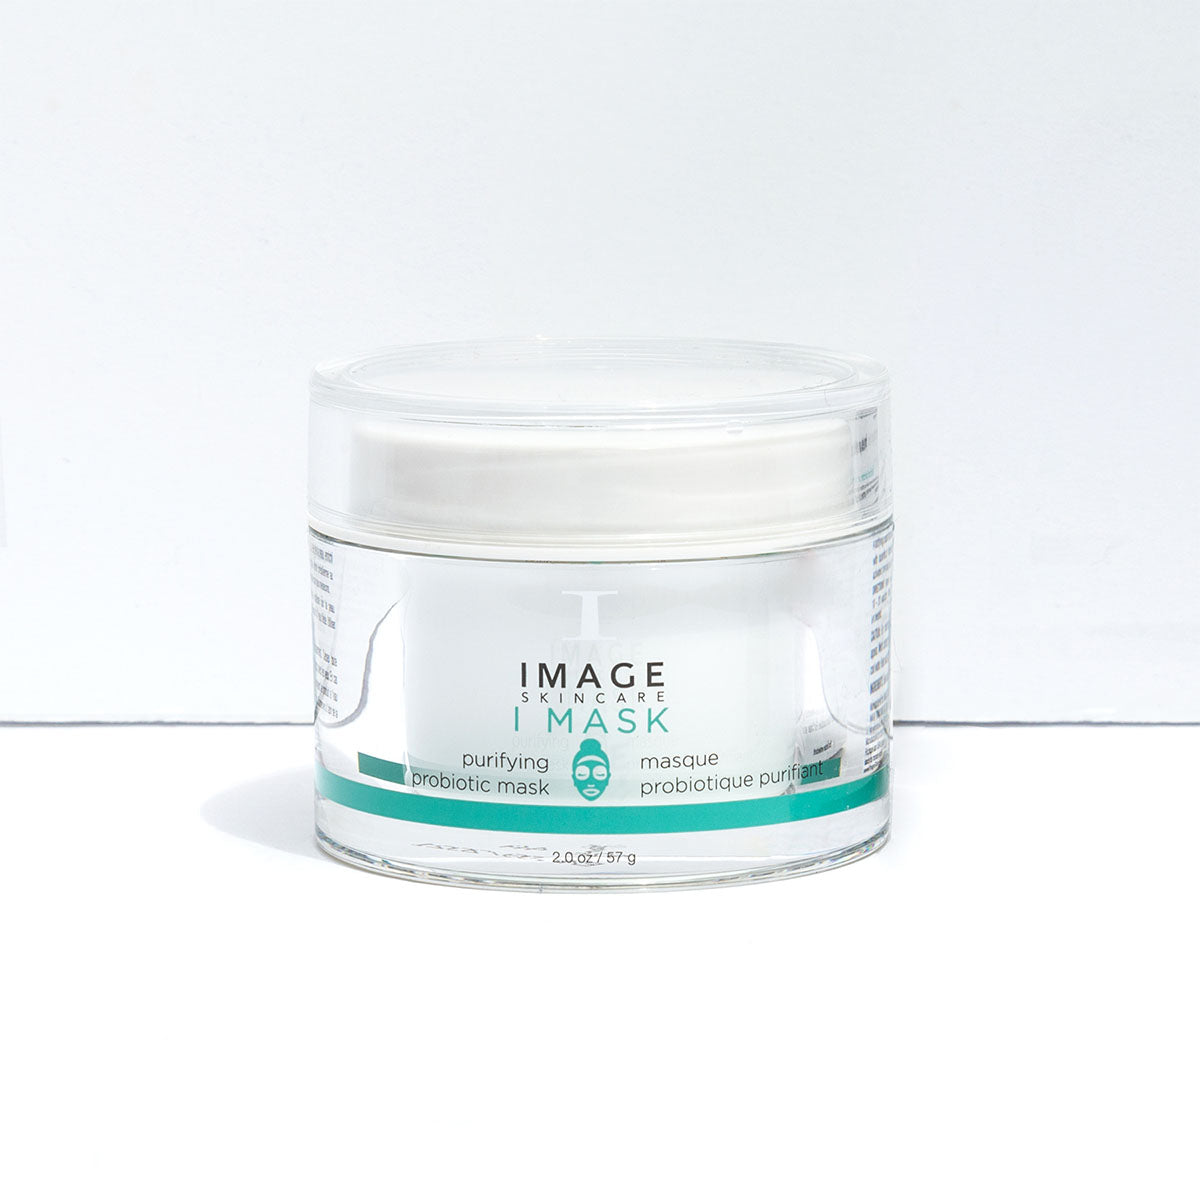 I MASK purifying probiotic mask | IMAGE Skincare